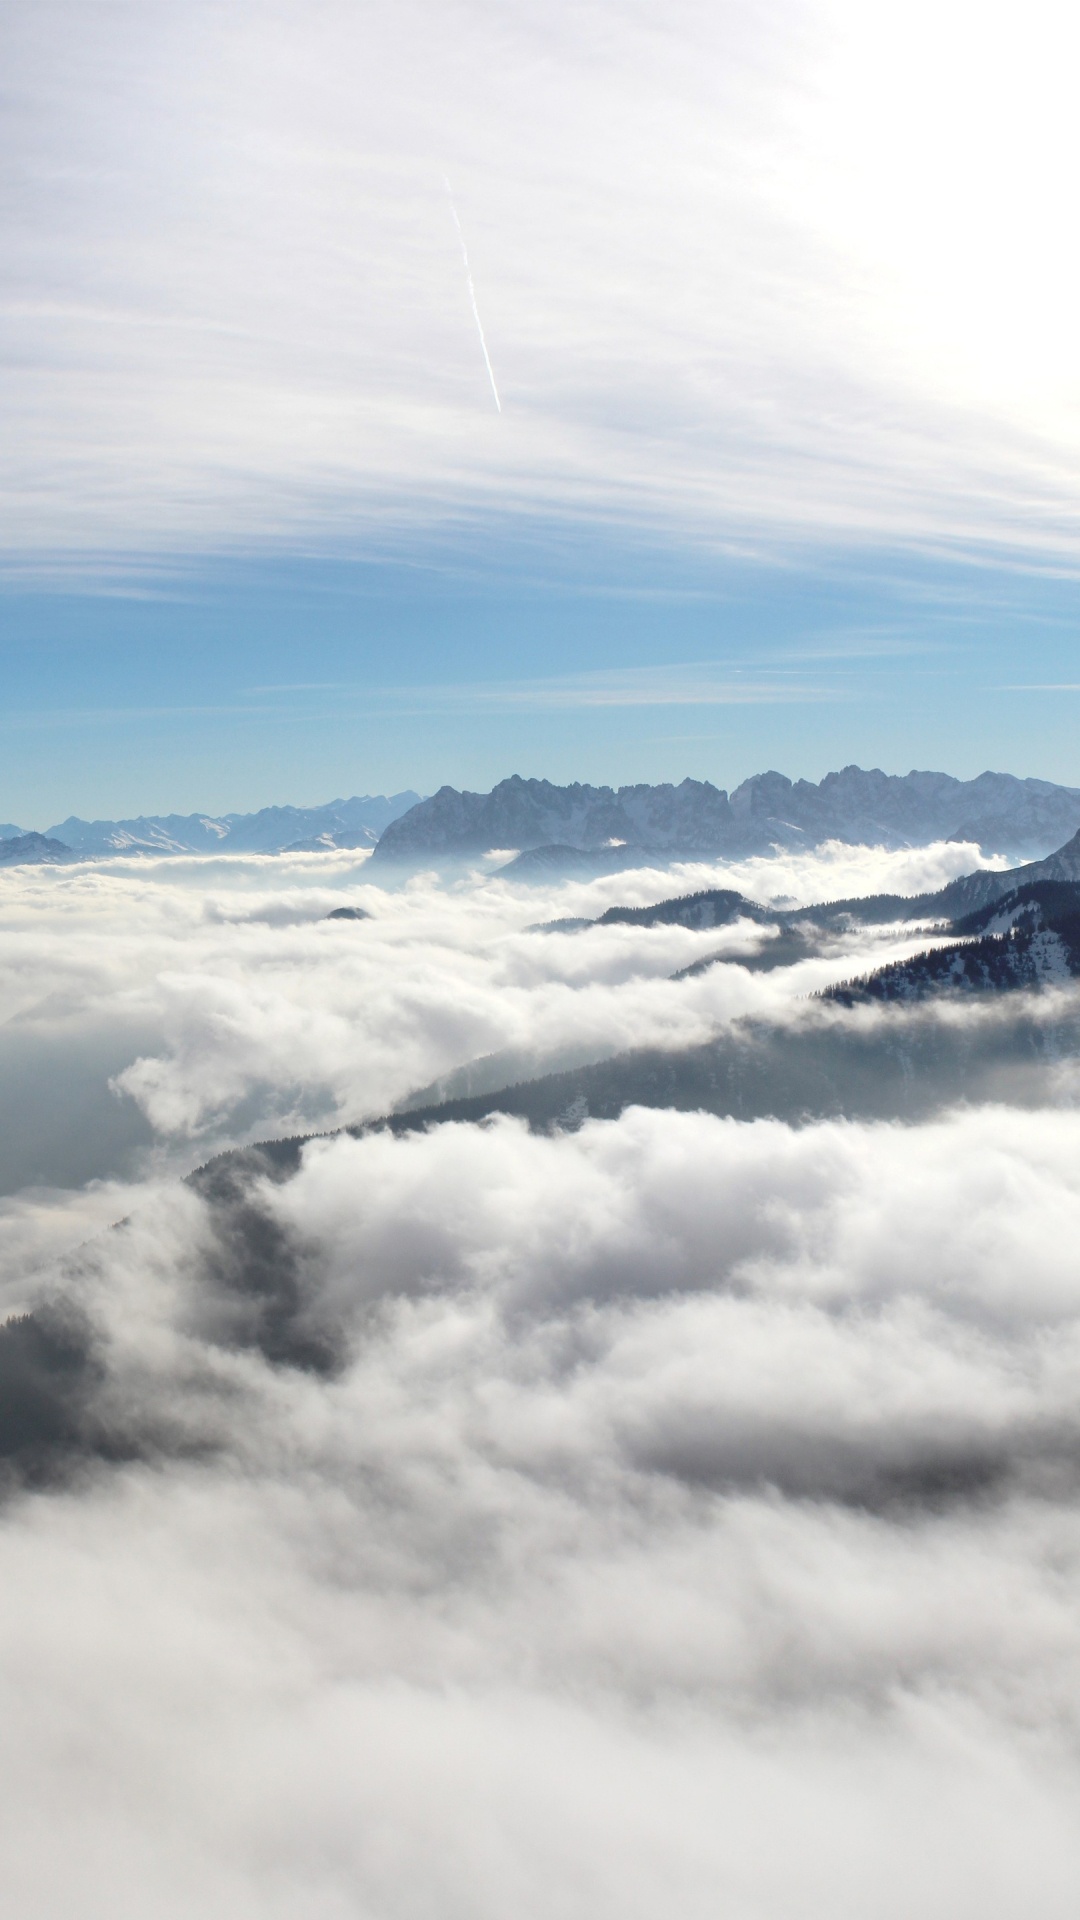 Nubes Blancas Sobre Montañas Cubiertas de Nieve. Wallpaper in 1080x1920 Resolution